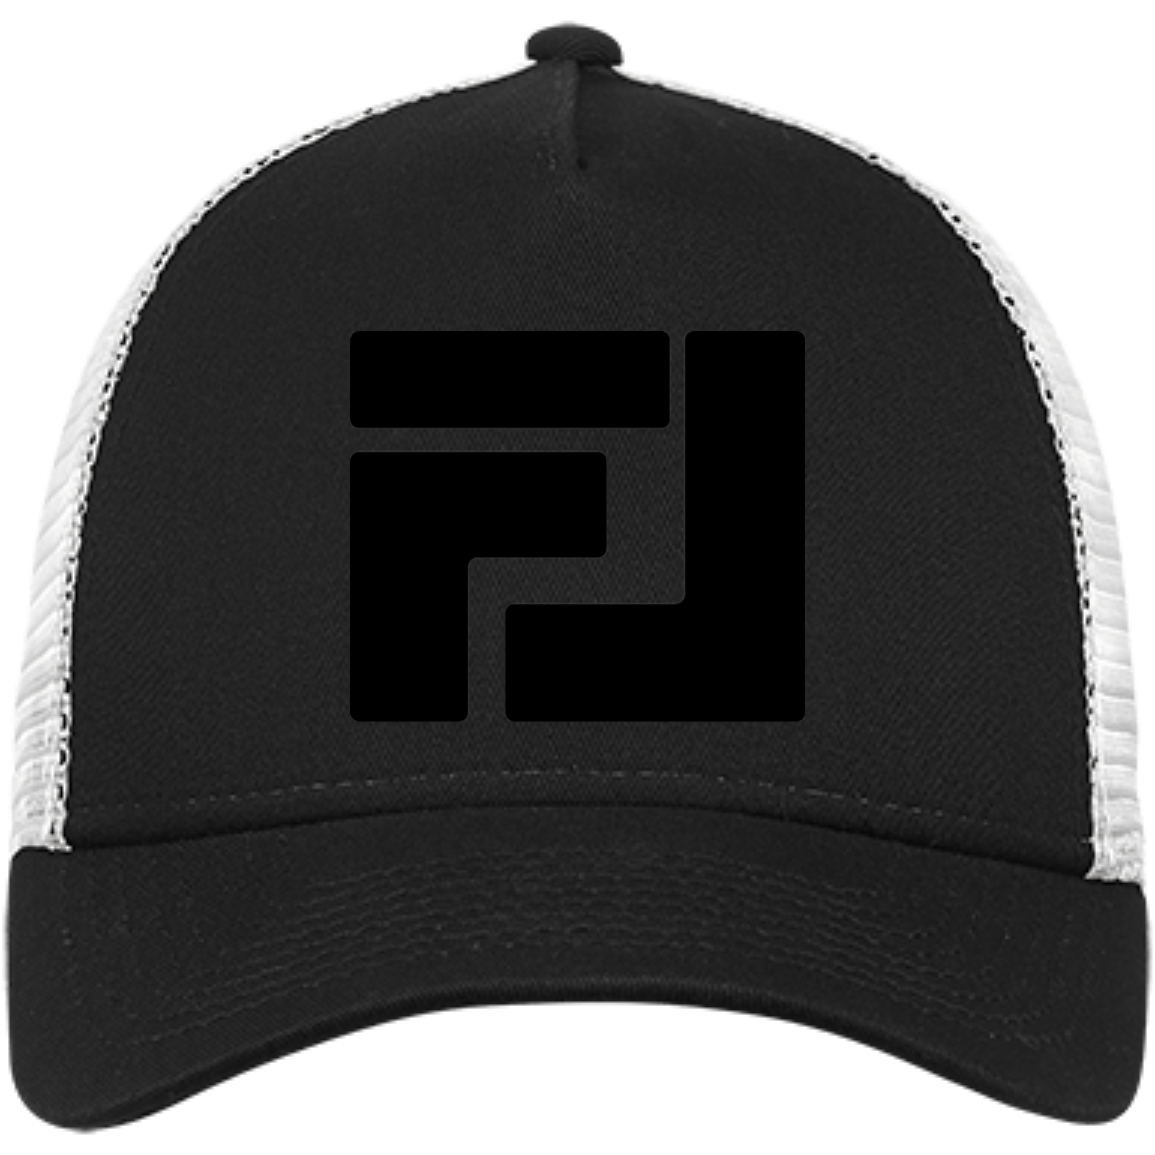 FL Mesh Back Trucker Hat - Black Logo